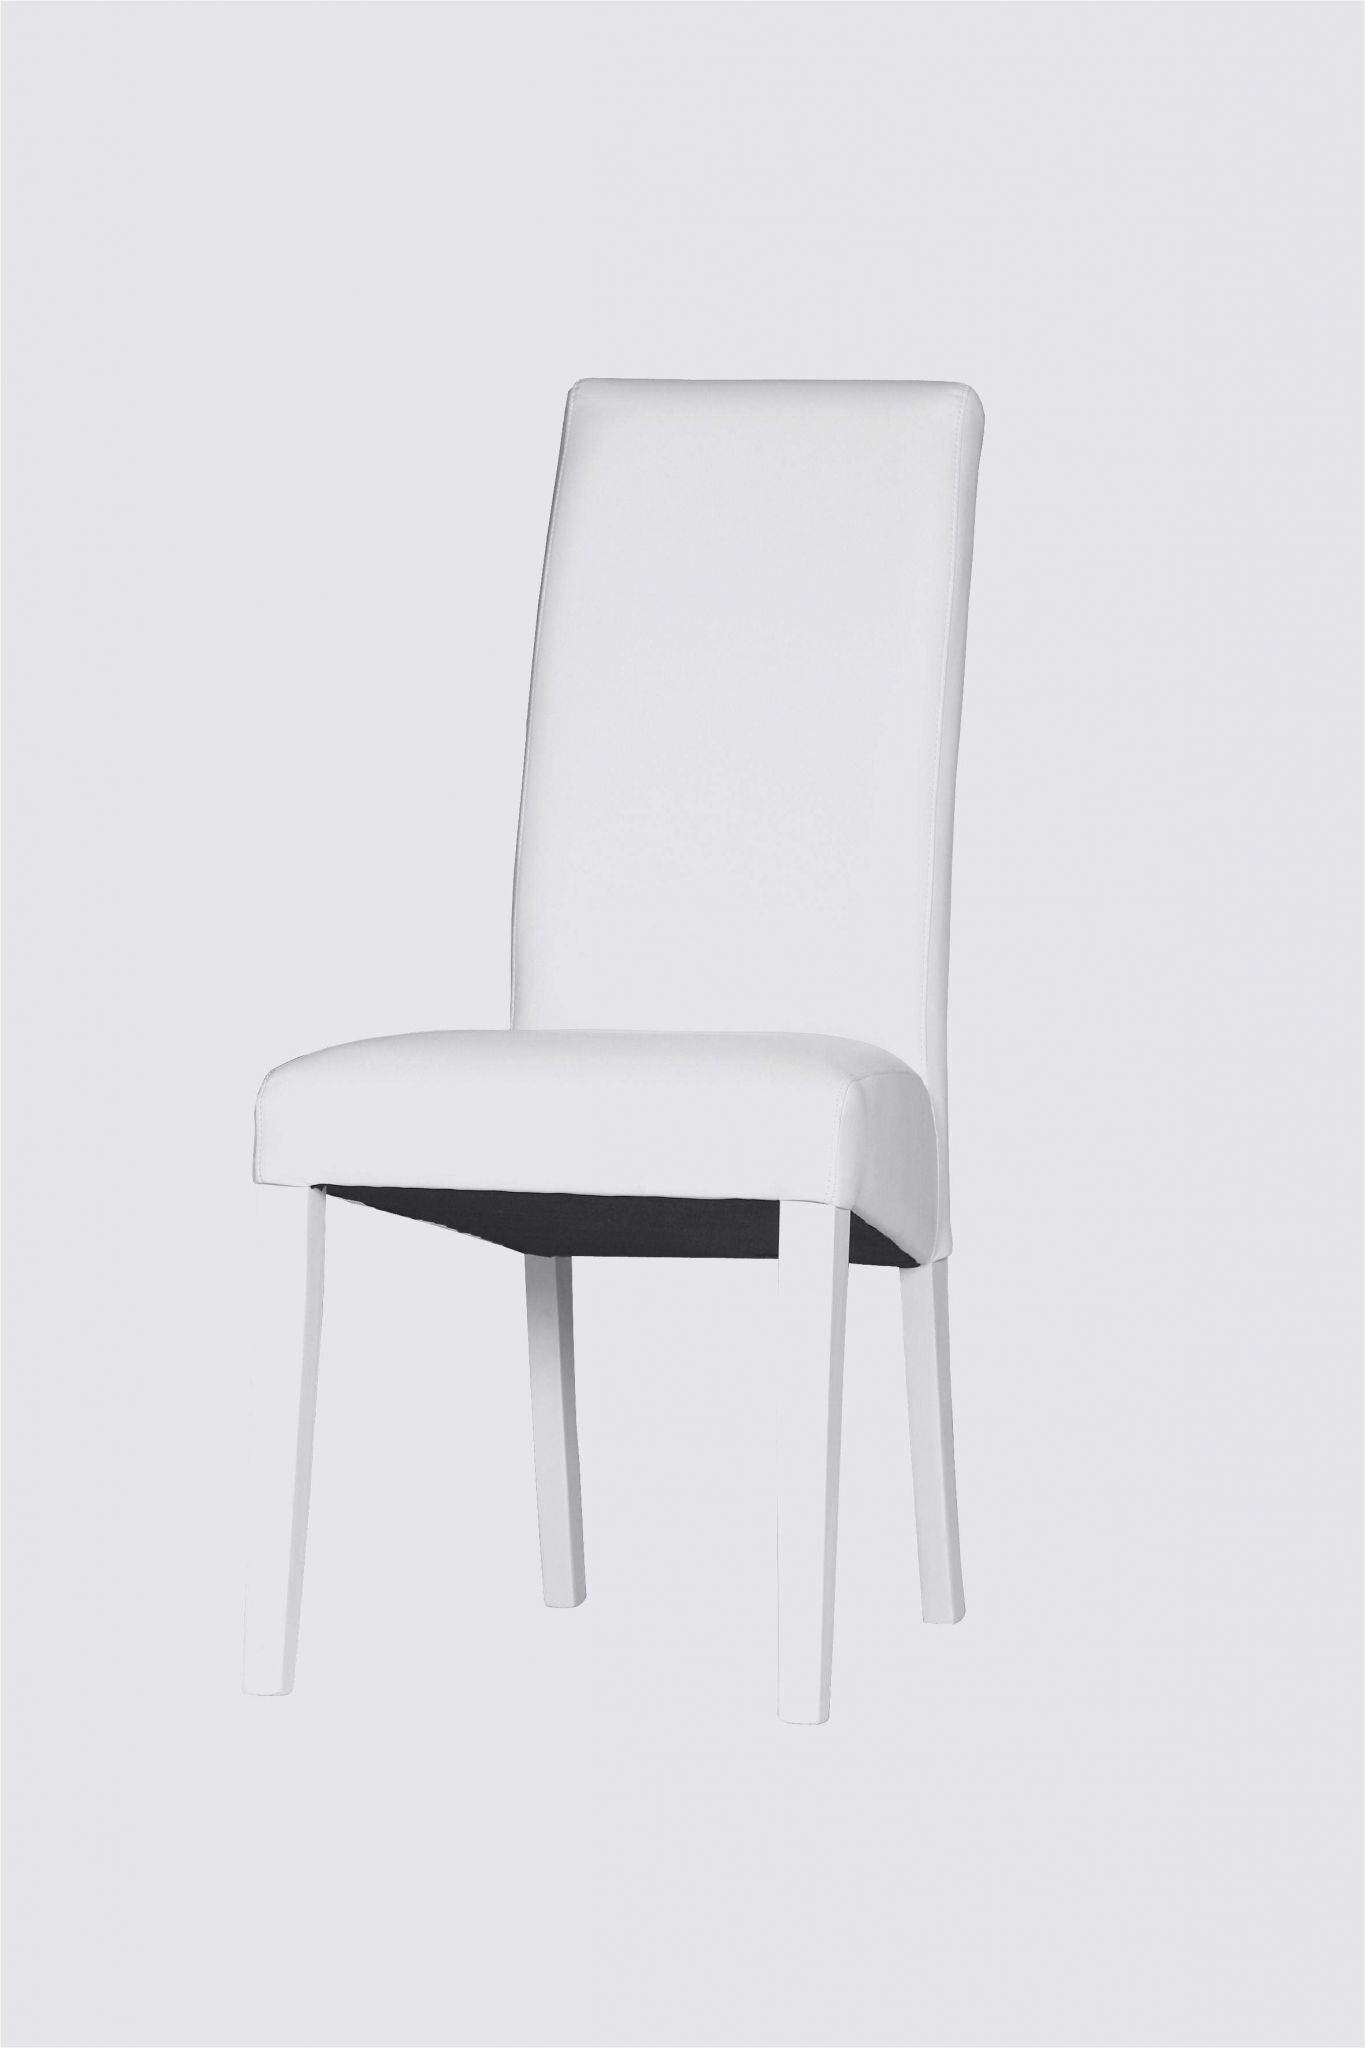 chaise de jardin pliante blanche ou chaise noir pas cher chaise noir pas cher a legant chaise blanche 0d de chaise de jardin pliante blanche